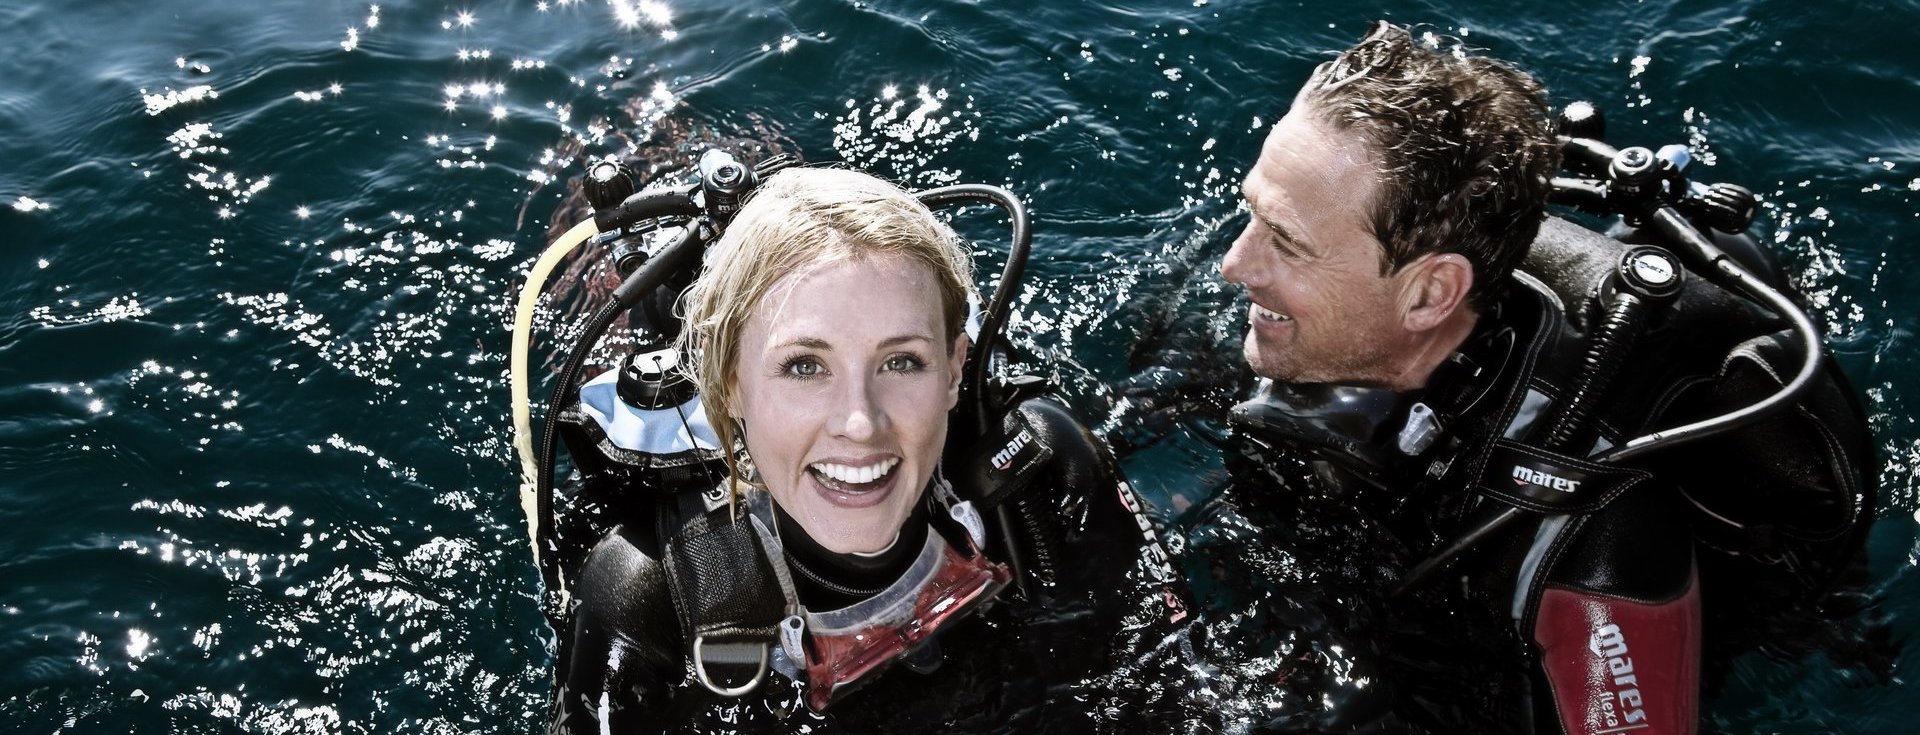 Snorkeling, Discover Scuba Diving & Dive Courses